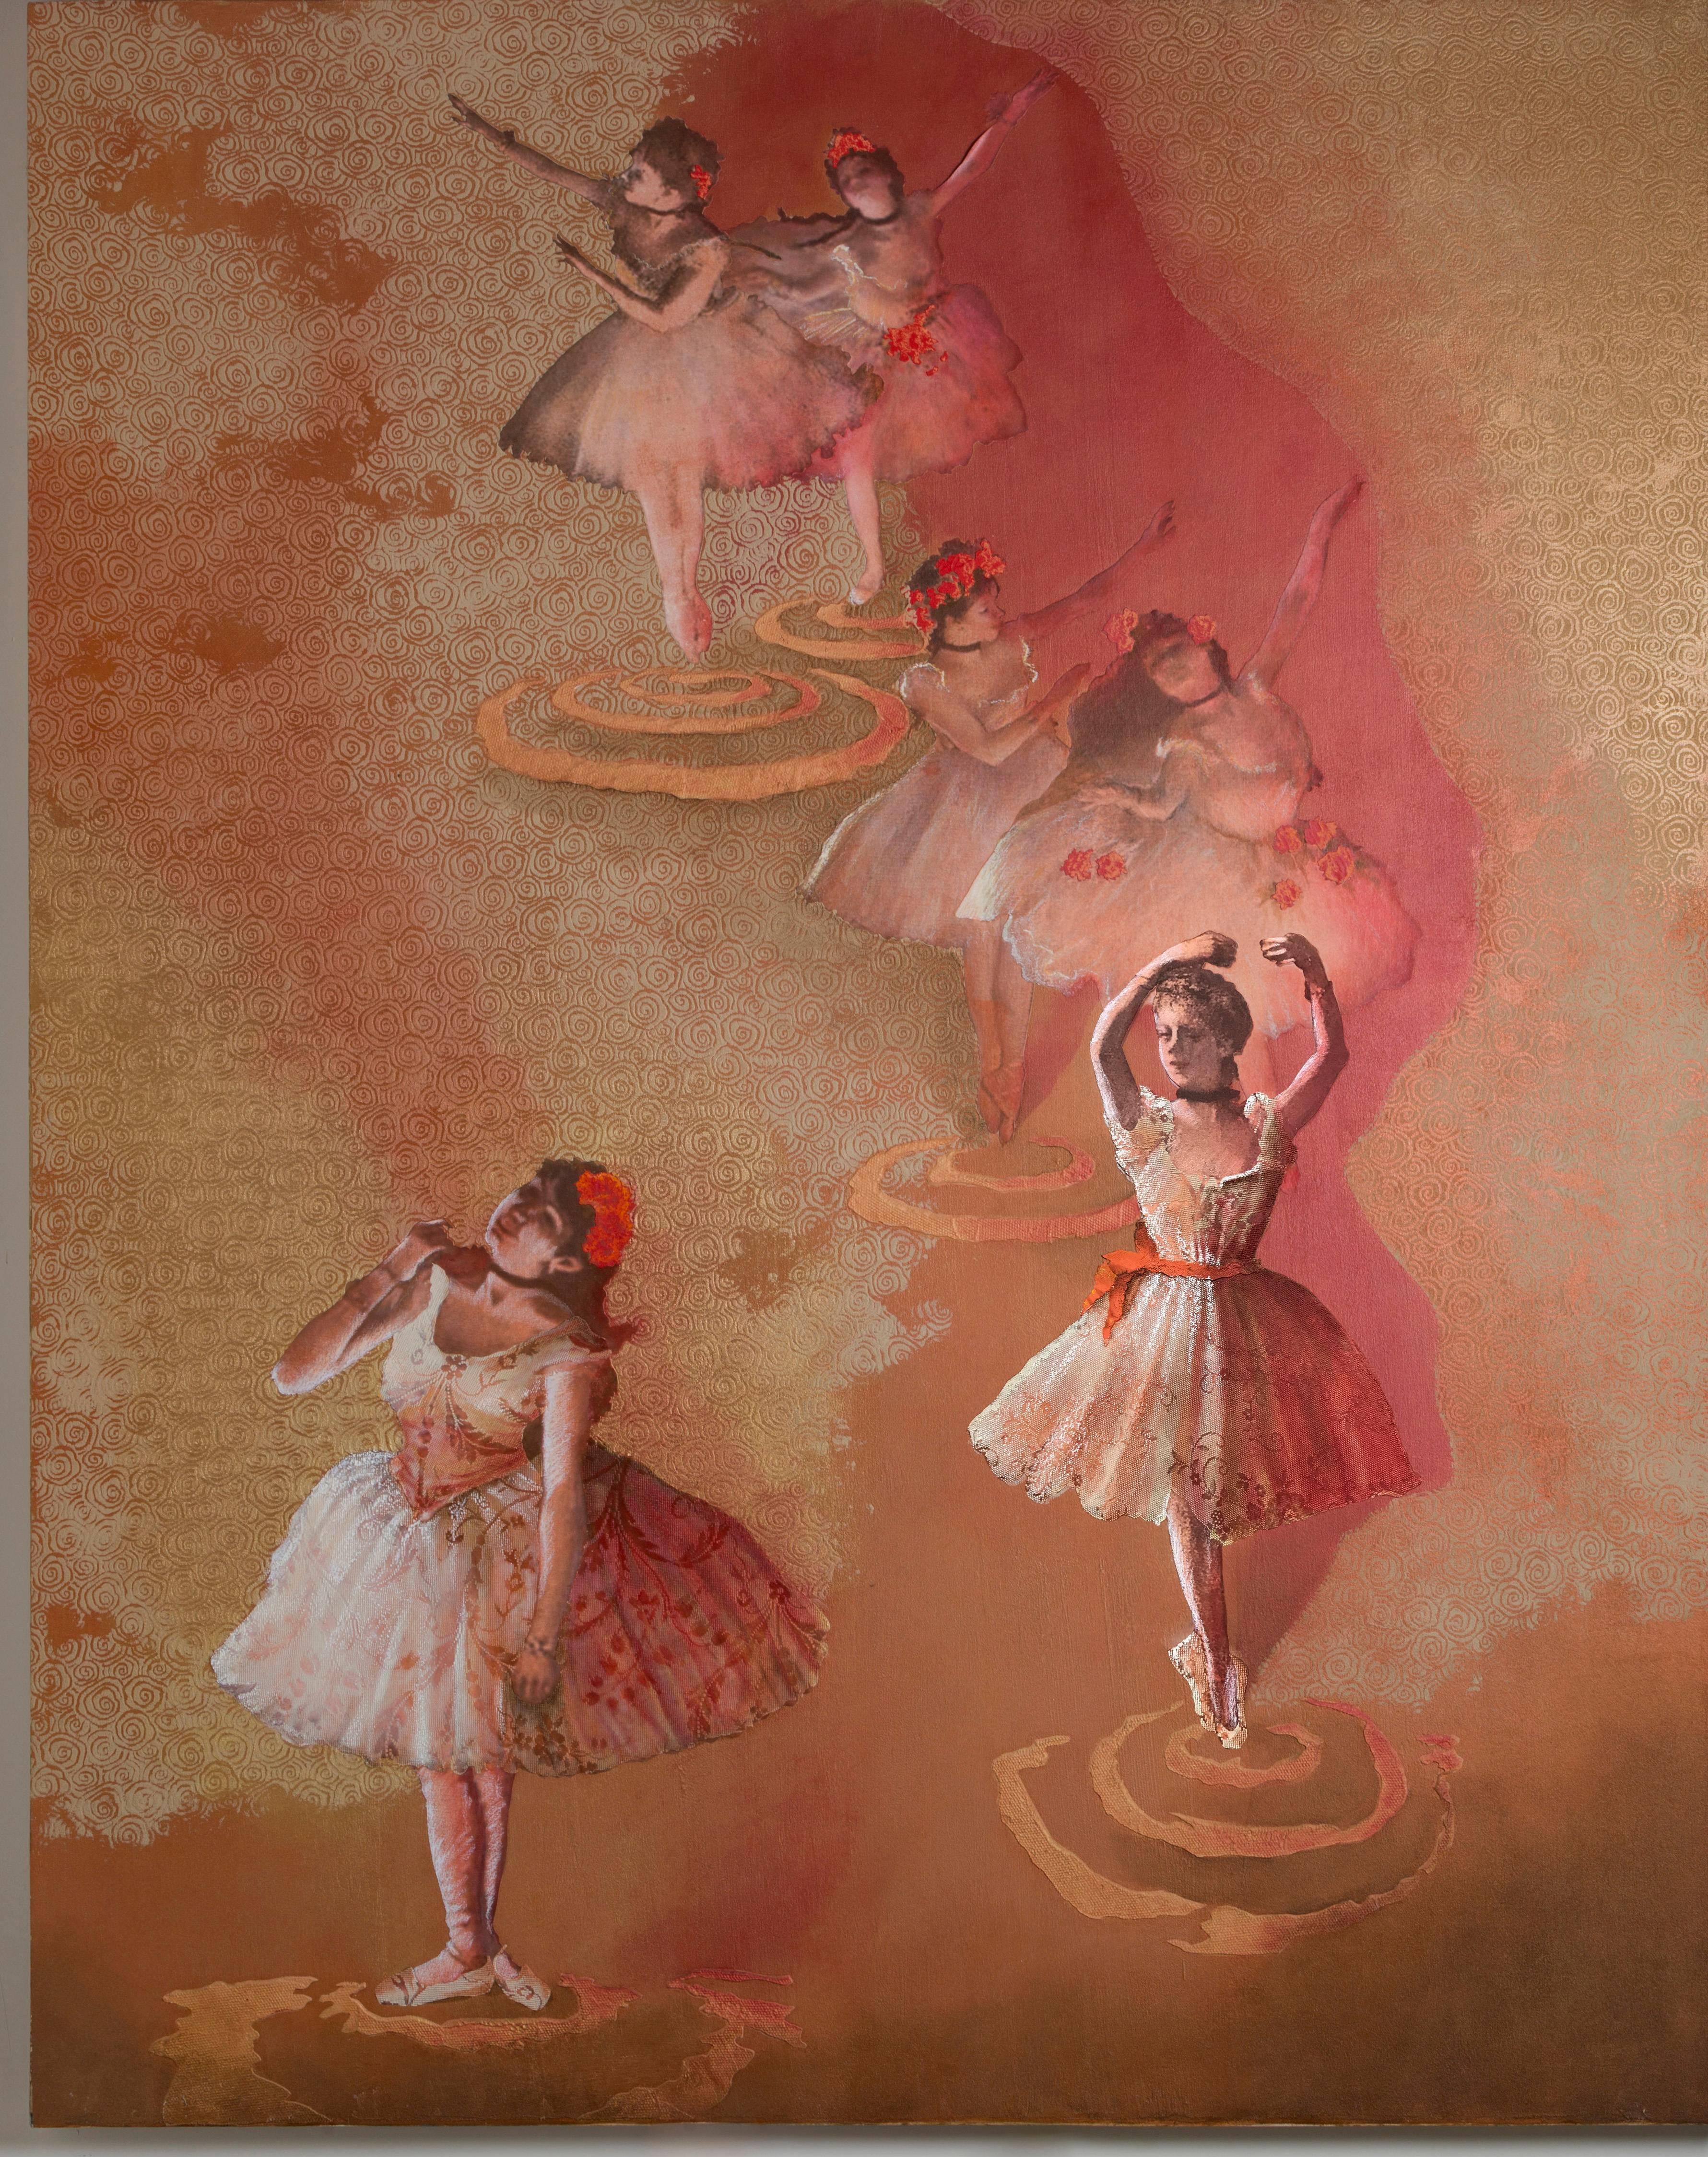 Pirouette - Painting by Ricardo Pelaez